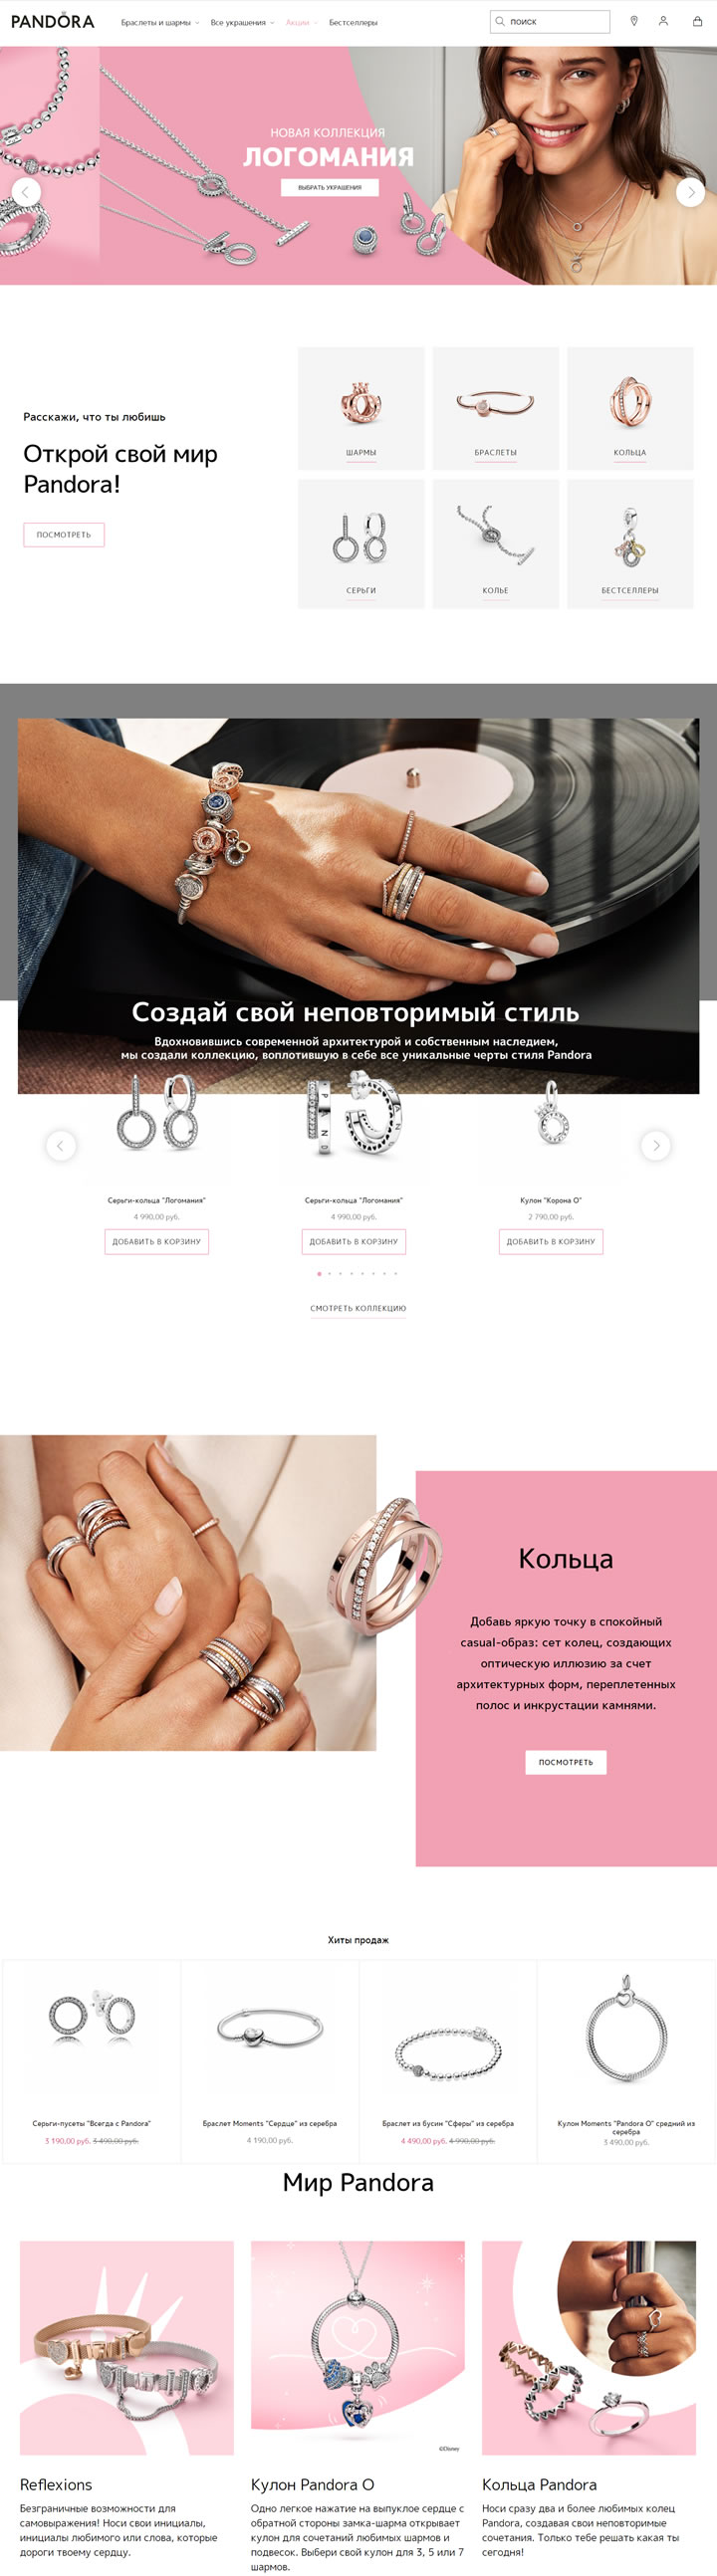 潘多拉珠寶俄羅斯官方網上商店：PANDORA俄羅斯 俄羅斯購物網站 MeetKK-MeetKK